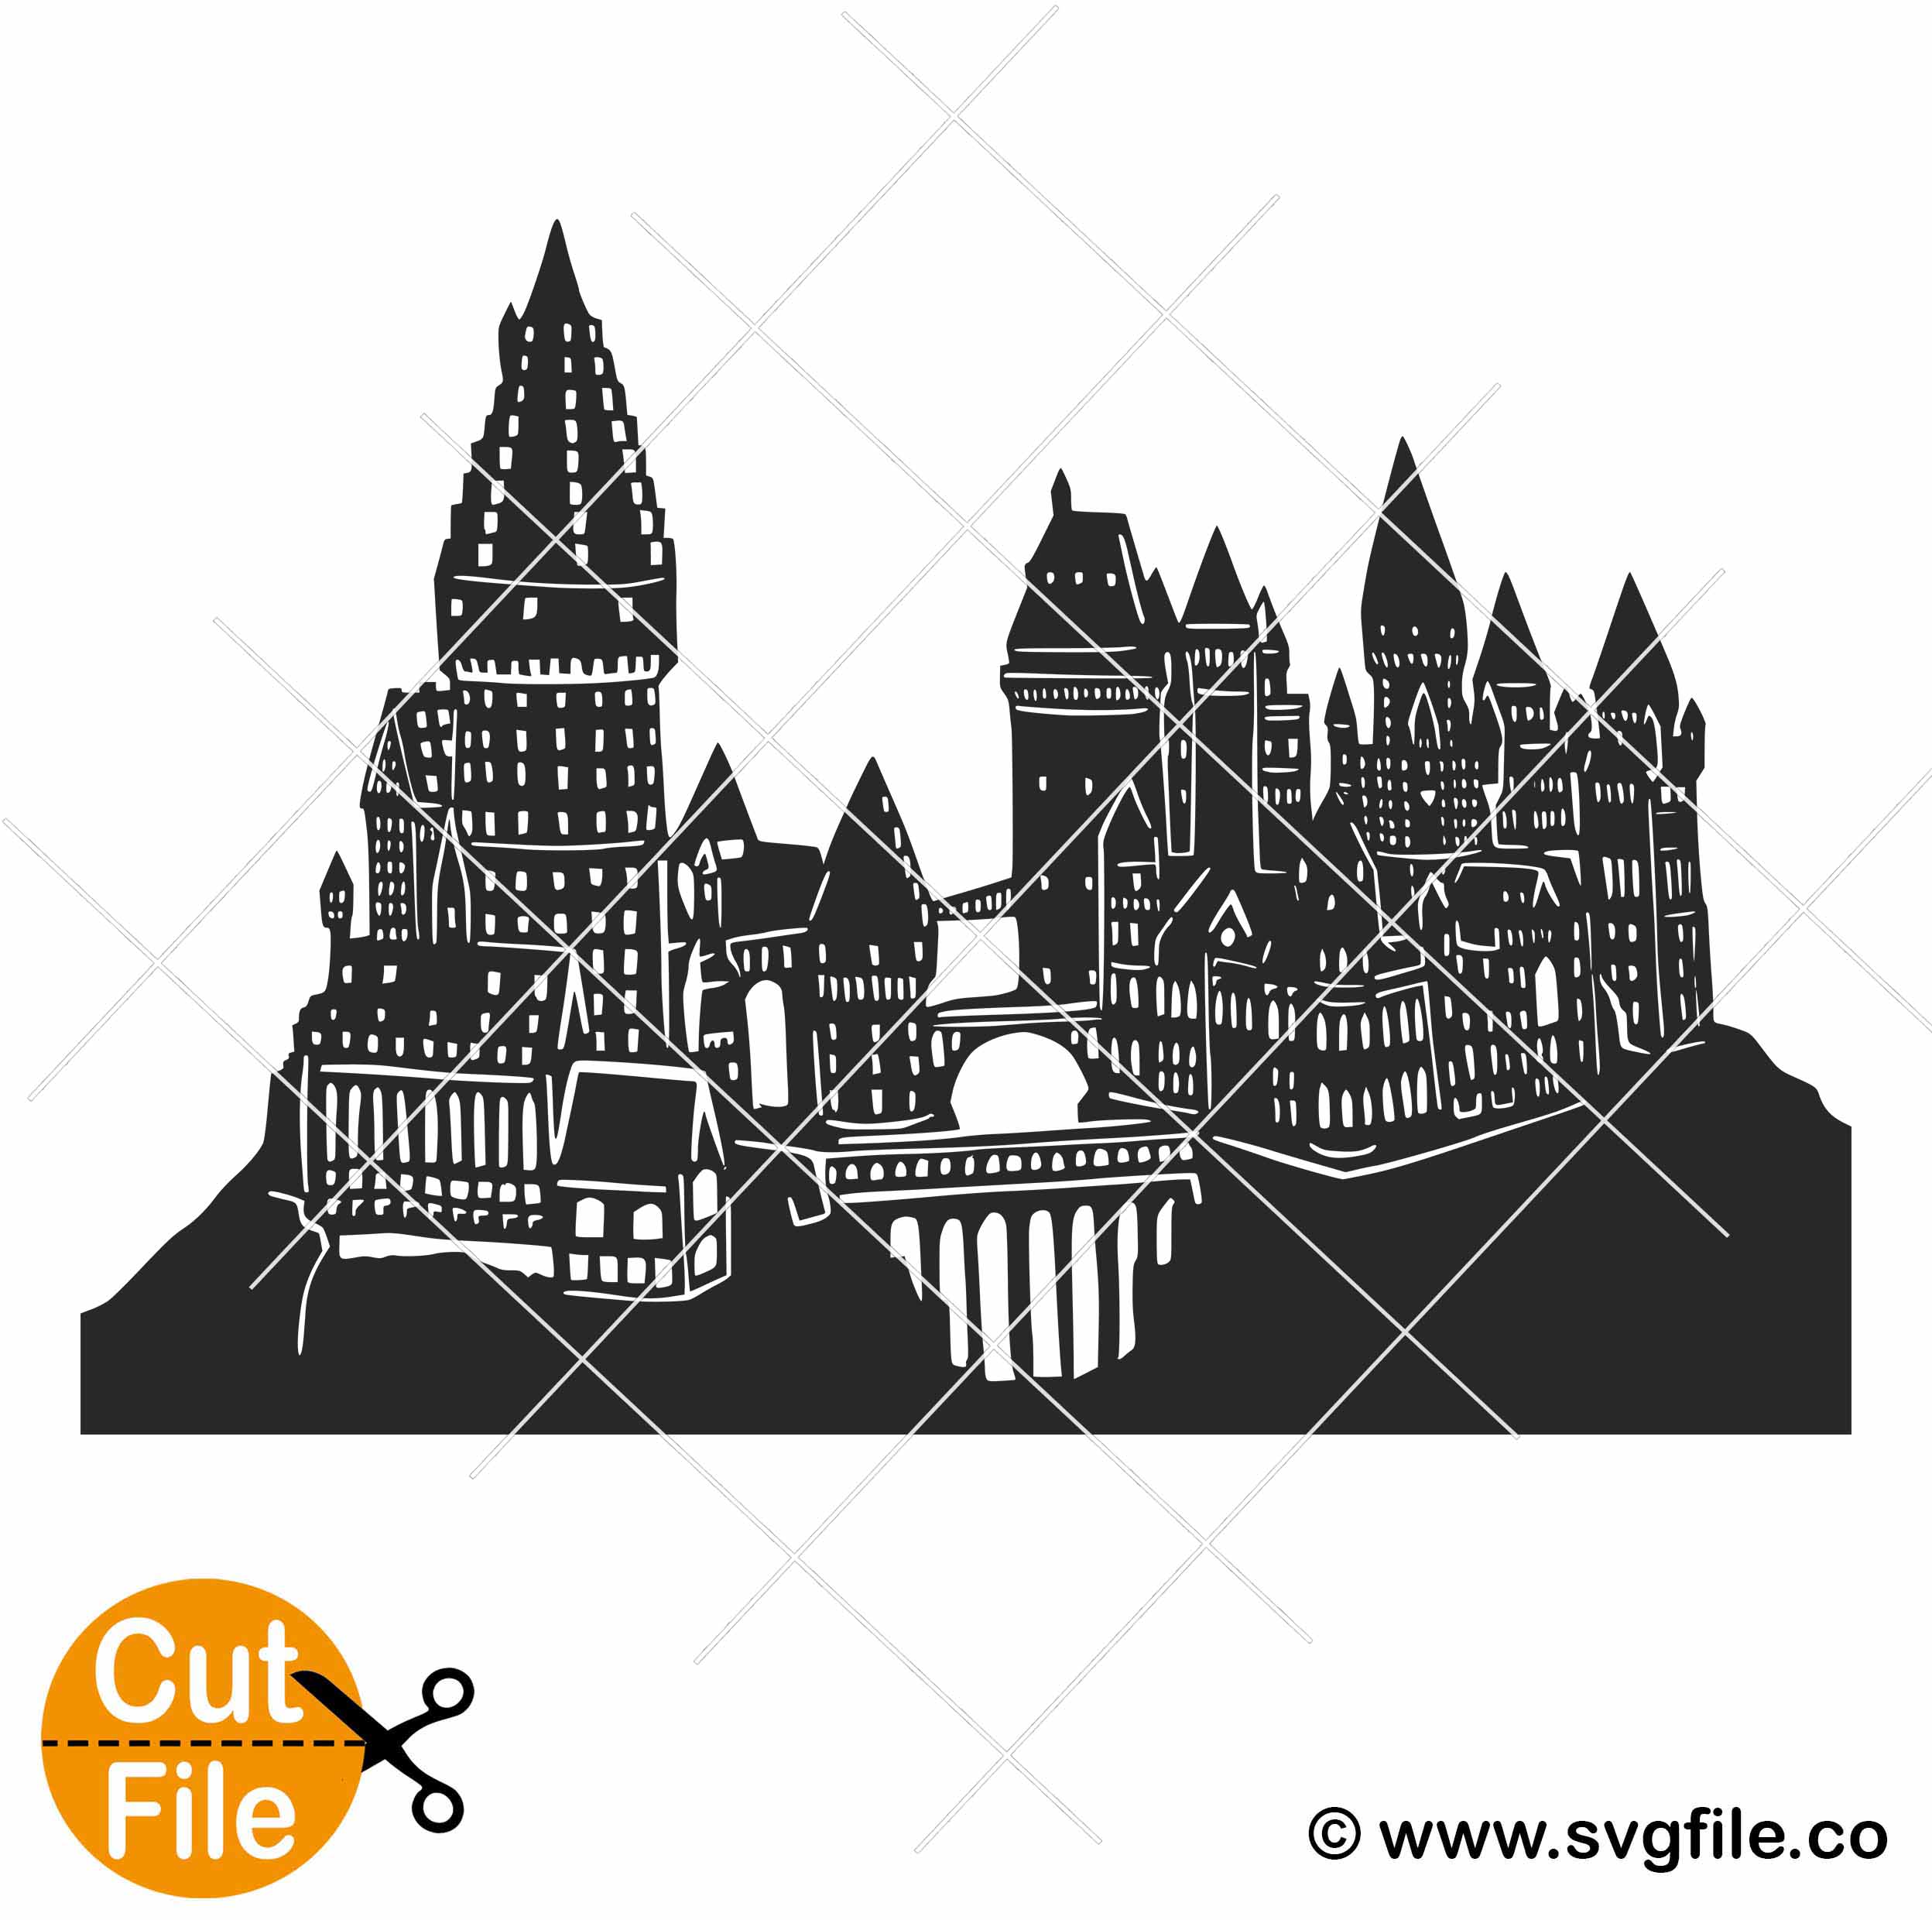 Hogwarts Castle svg 001 - Svgfile.co - 0.99 Cent SVG Files - Life Time